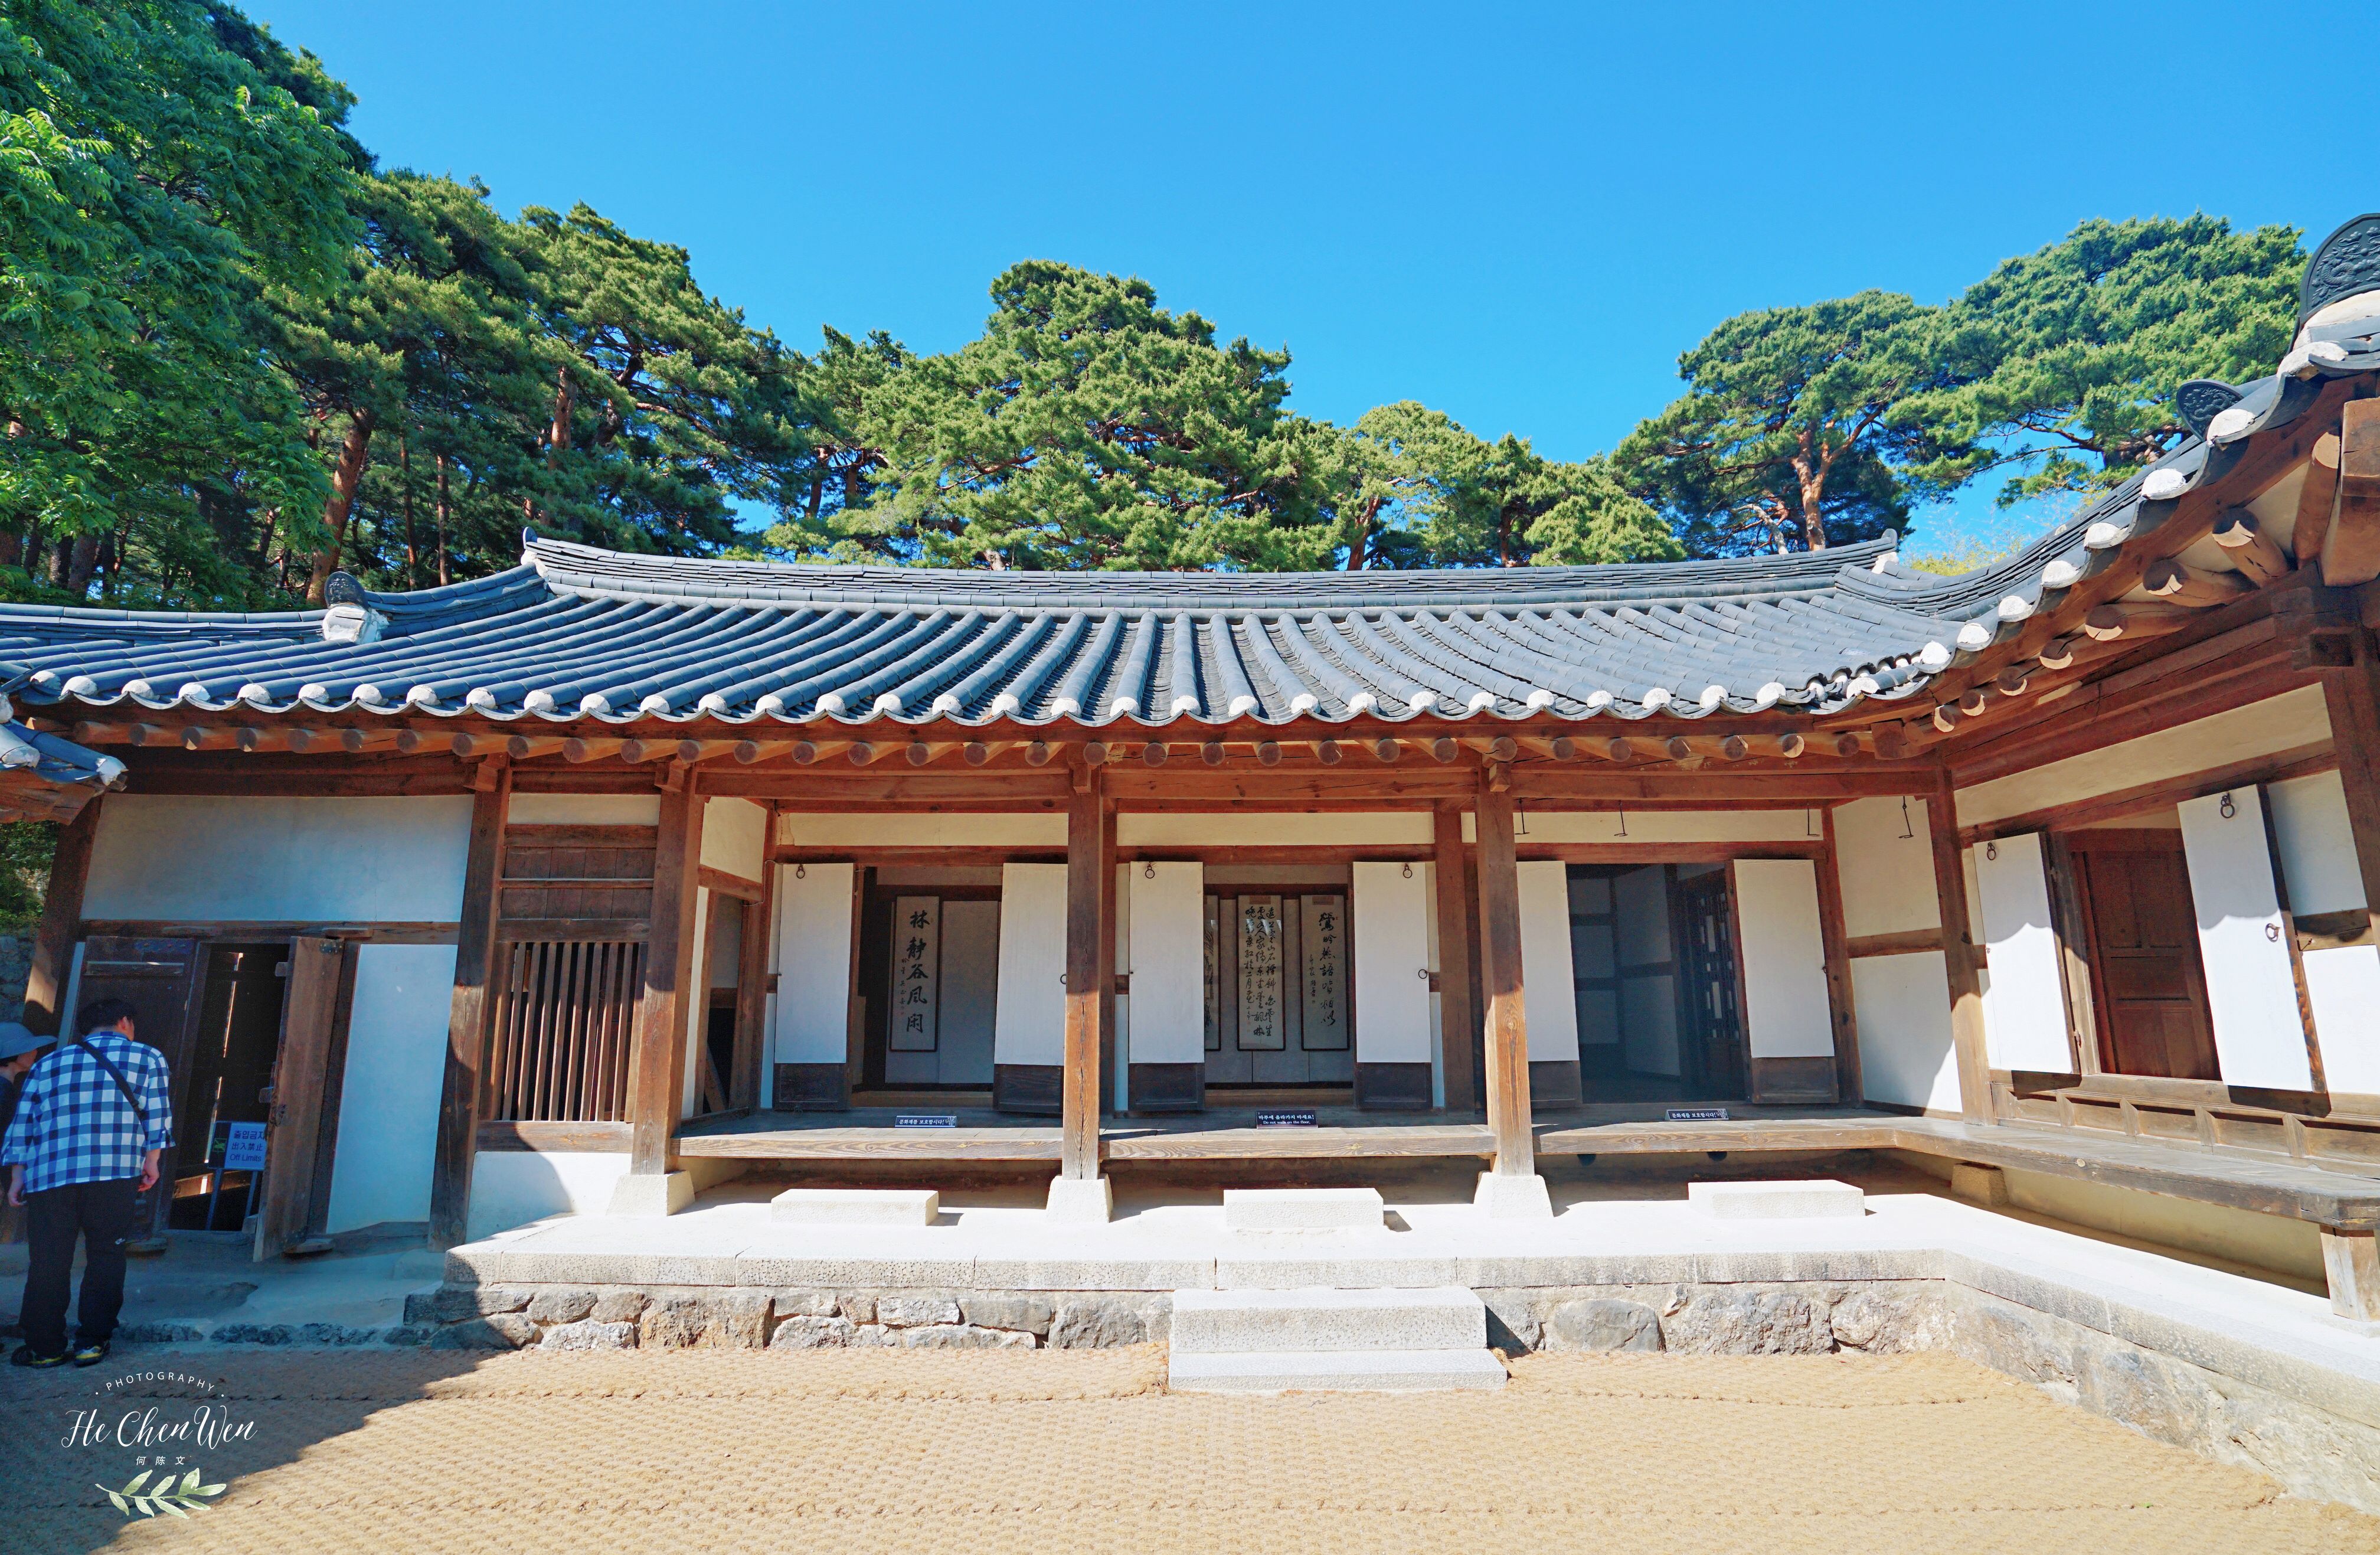 原创江原道著名景点韩国最贵女人的故居因遍布深色竹子得名